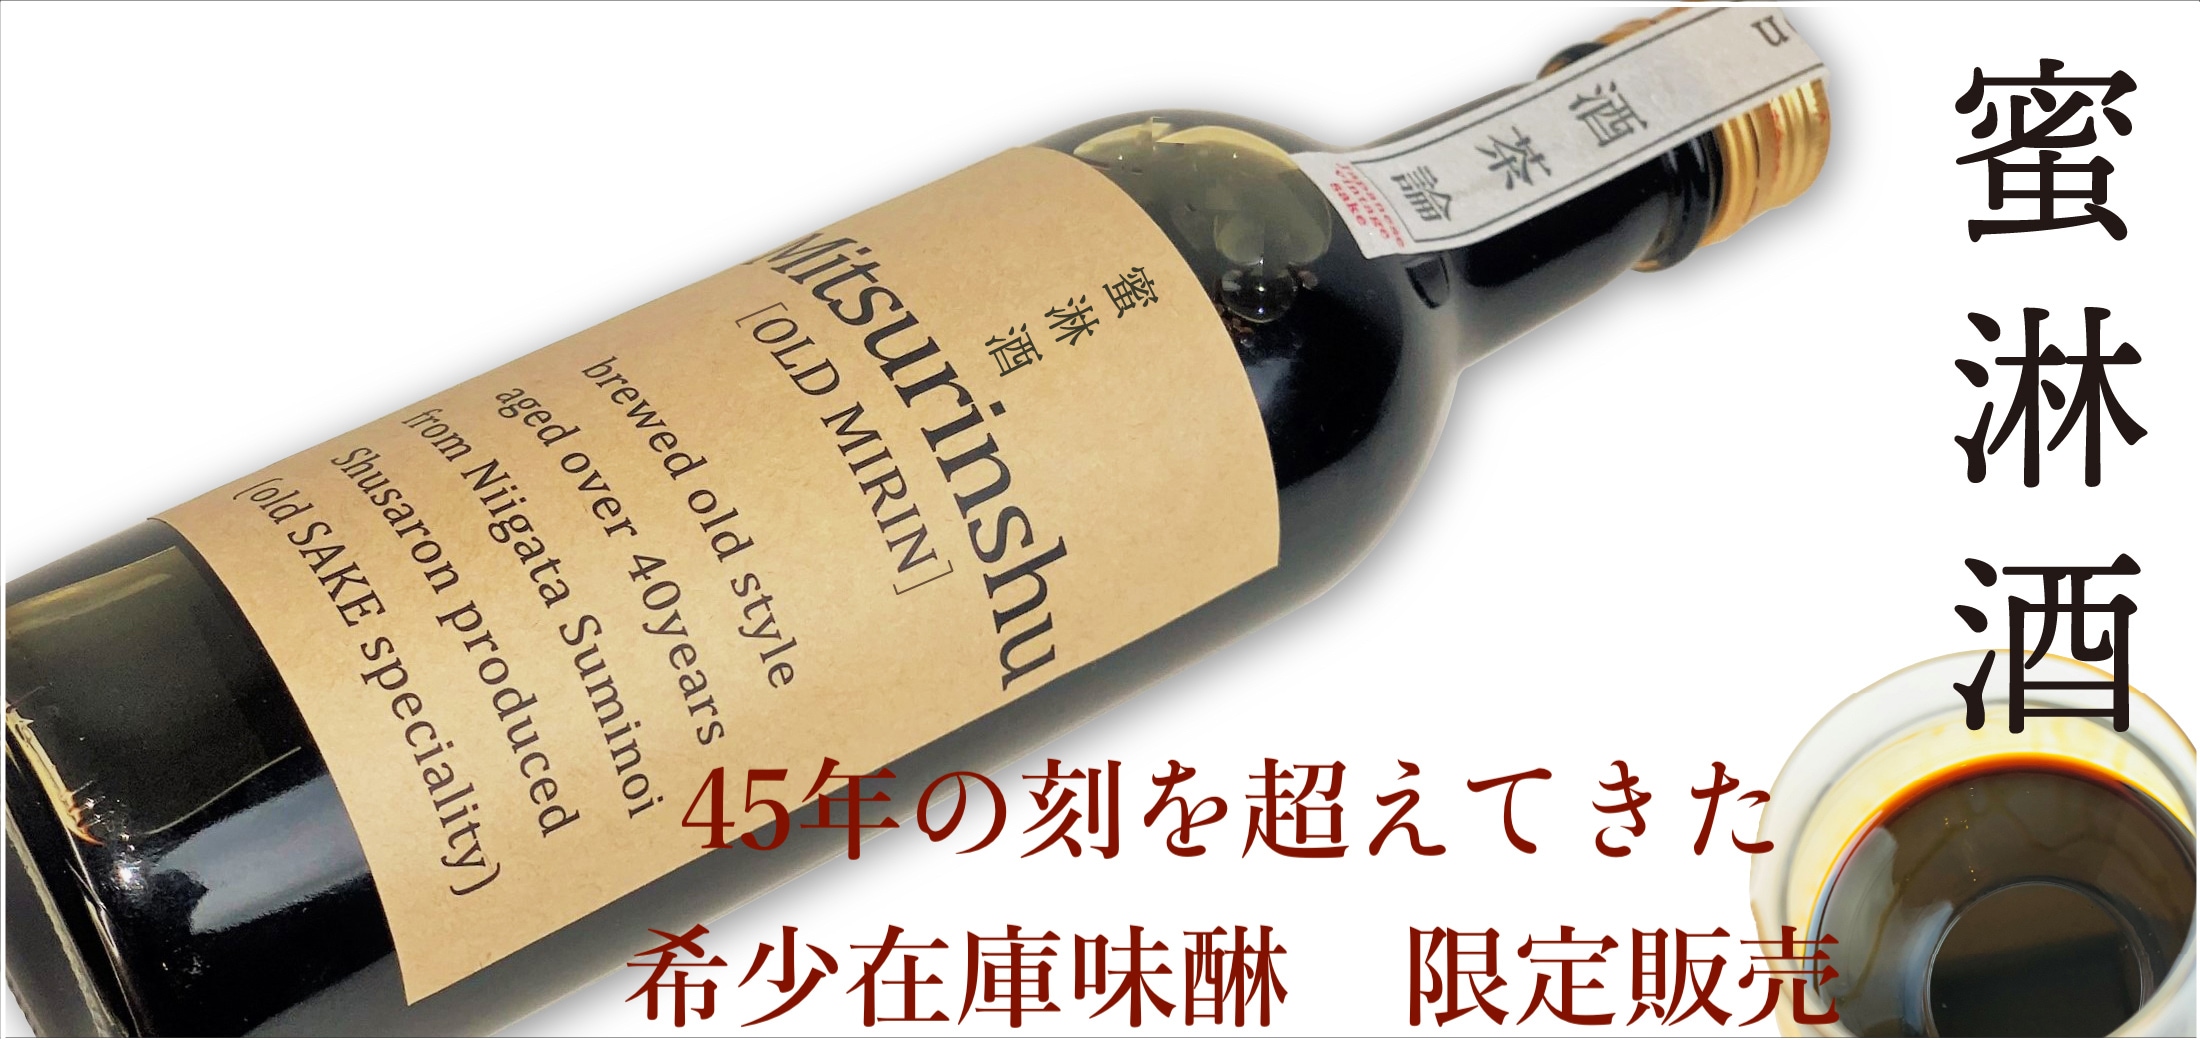 心恵 shin-e 石川十七 日本酒 - 日本酒